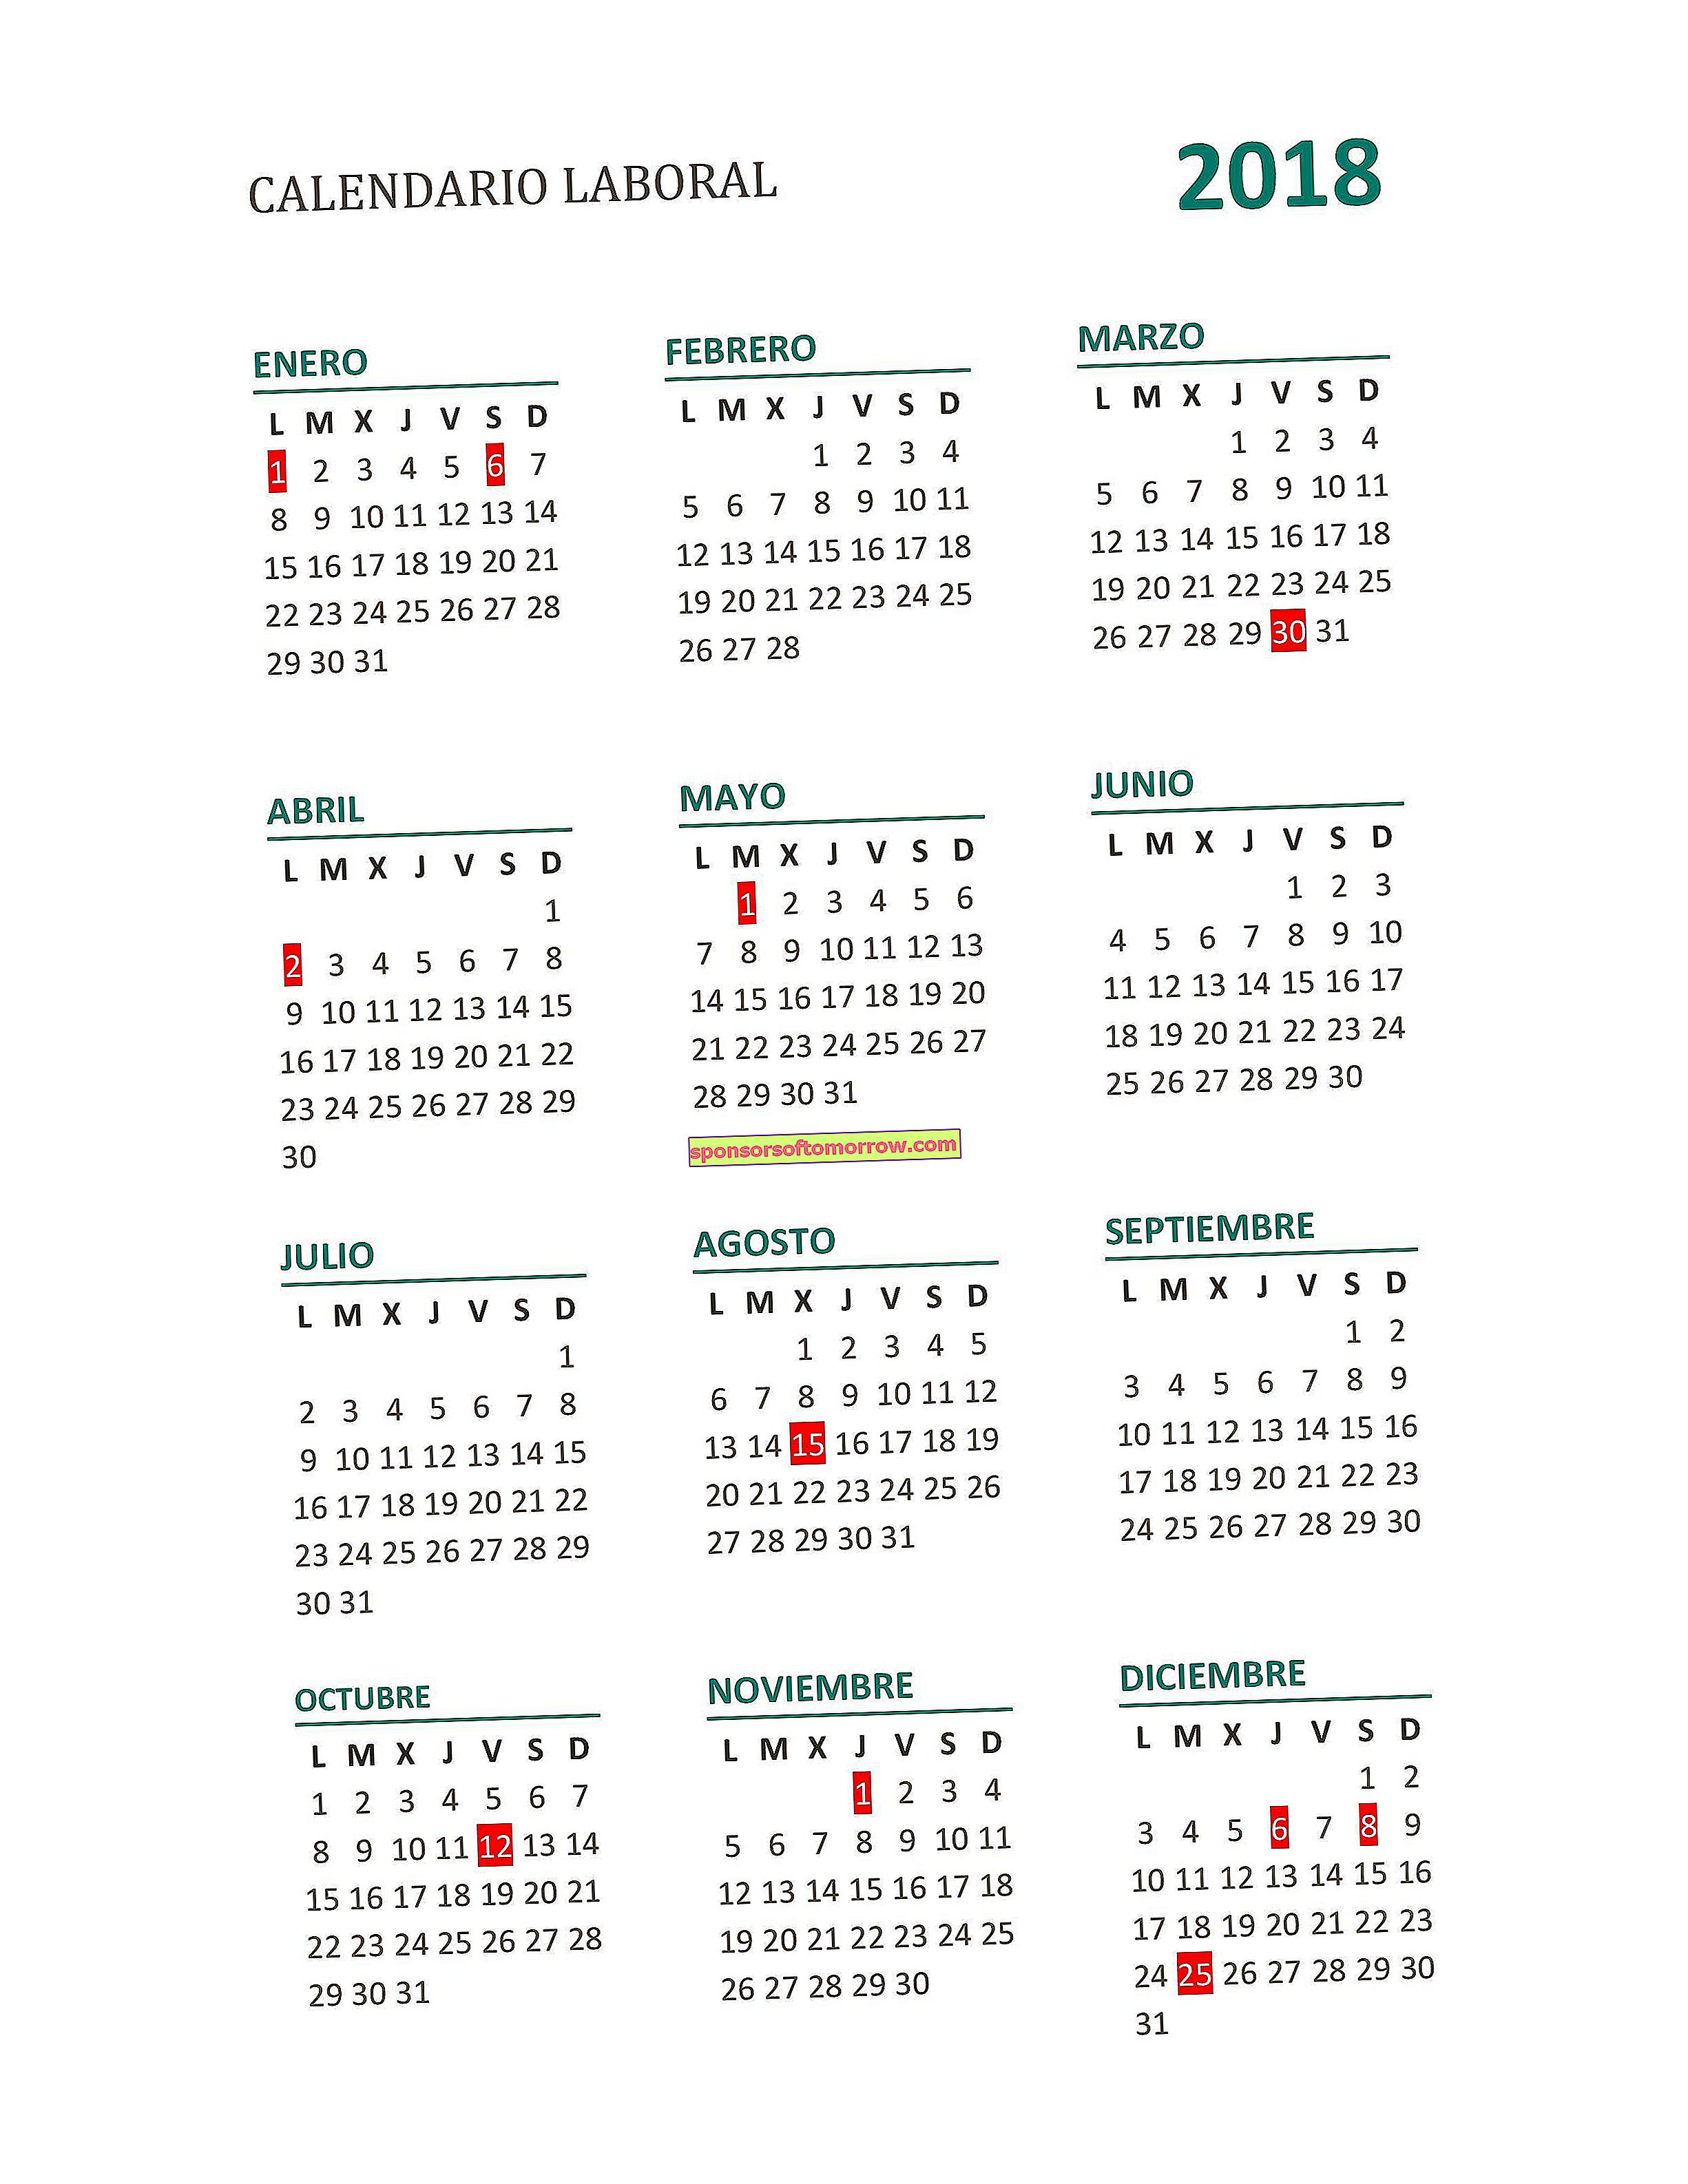 Full 2018 work calendar